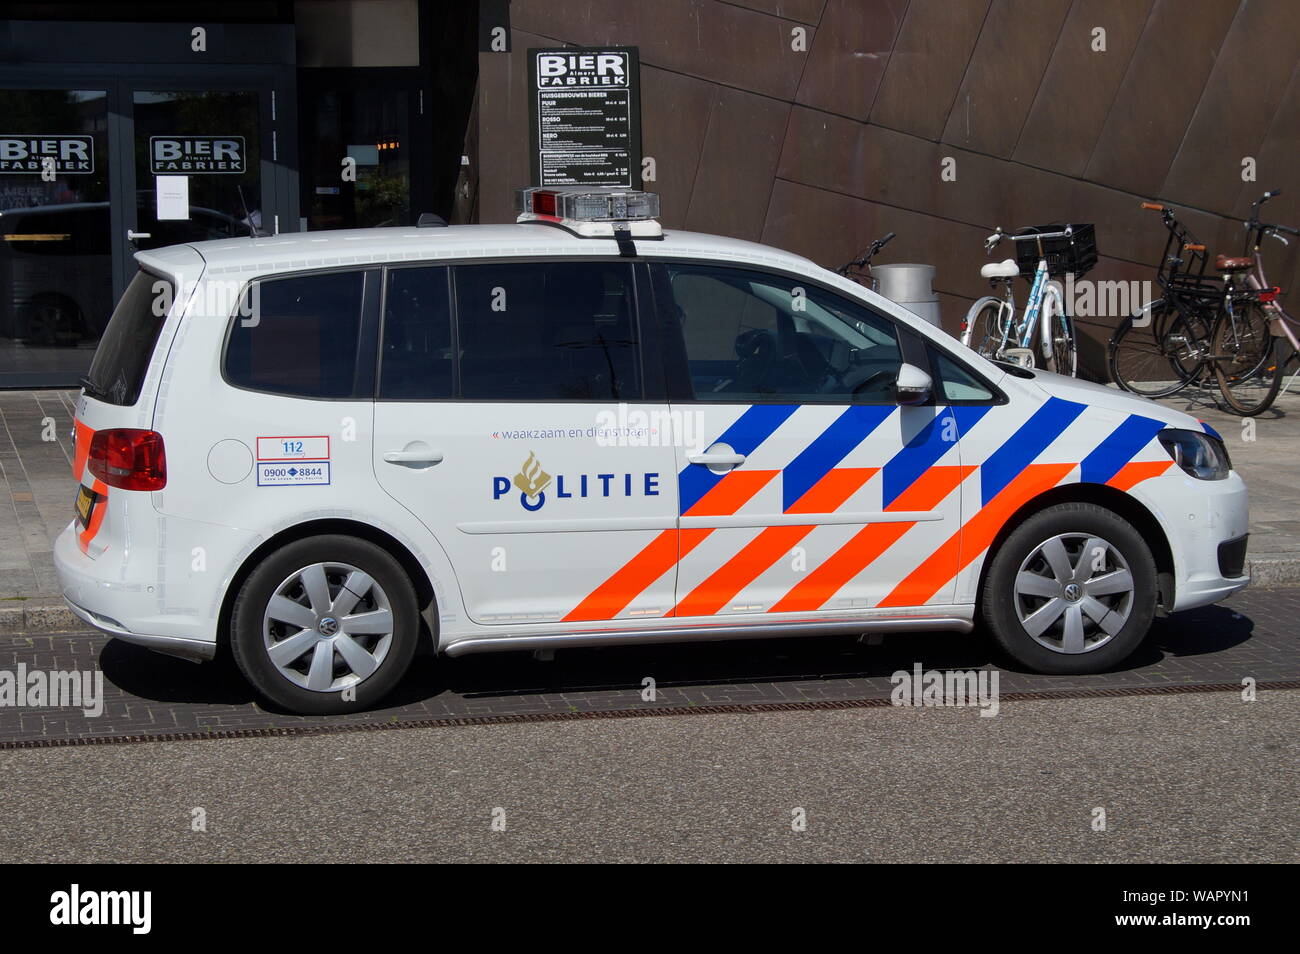 Almere Stad, Flevoland, Niederlande - 18. Juni 2017: Nationale Niederländische Polizei Auto (politie), Volkswagen Touran, auf einer Straße der Stadt geparkt. Stockfoto